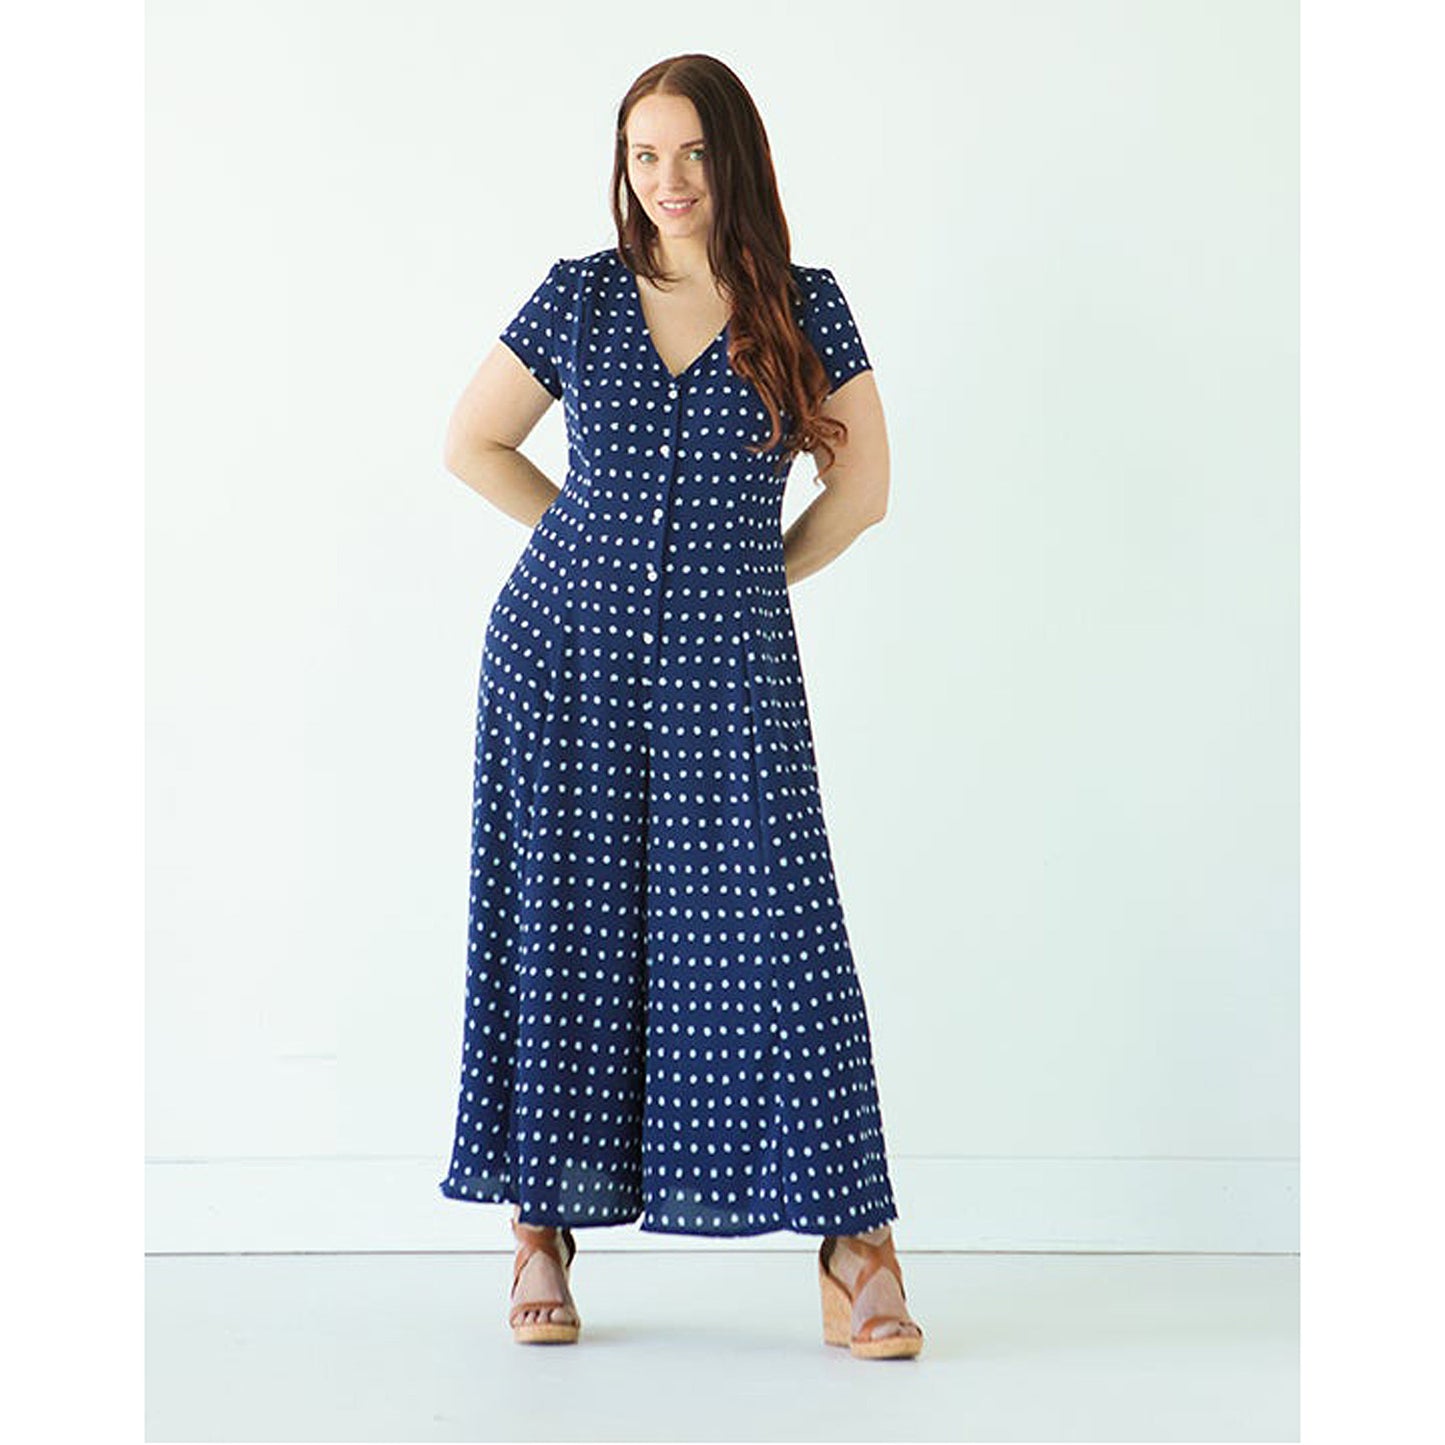 Shelby Dress / Romper Sewing Pattern - True Bias